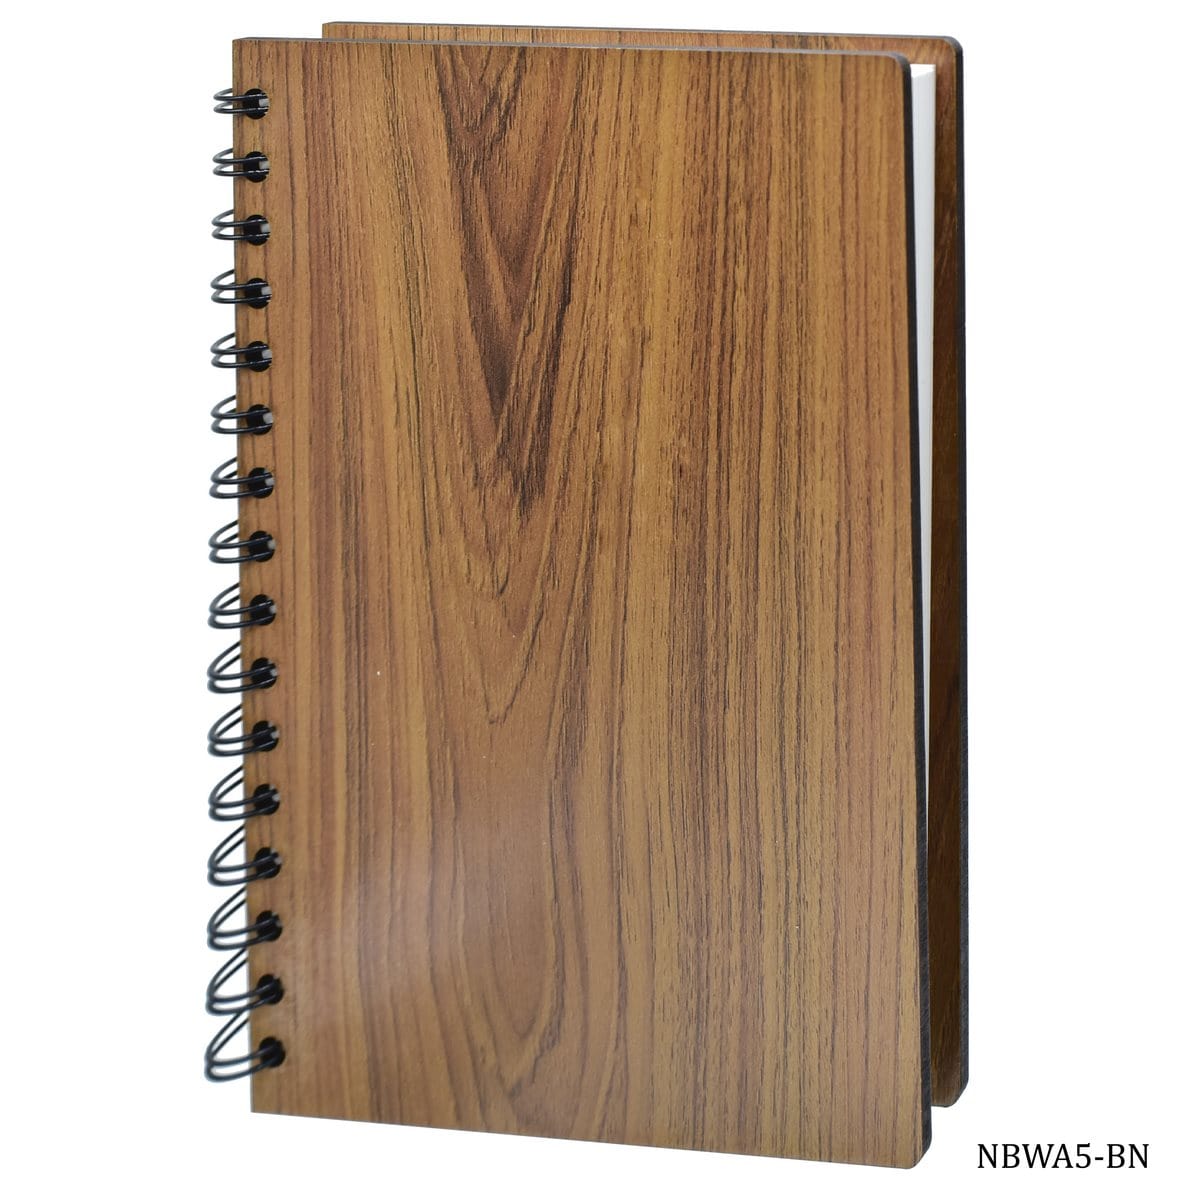 jags-mumbai Notebooks & Diaries Wooden Notebook A5 160 Pgs 80 Sheet Wiro Brown